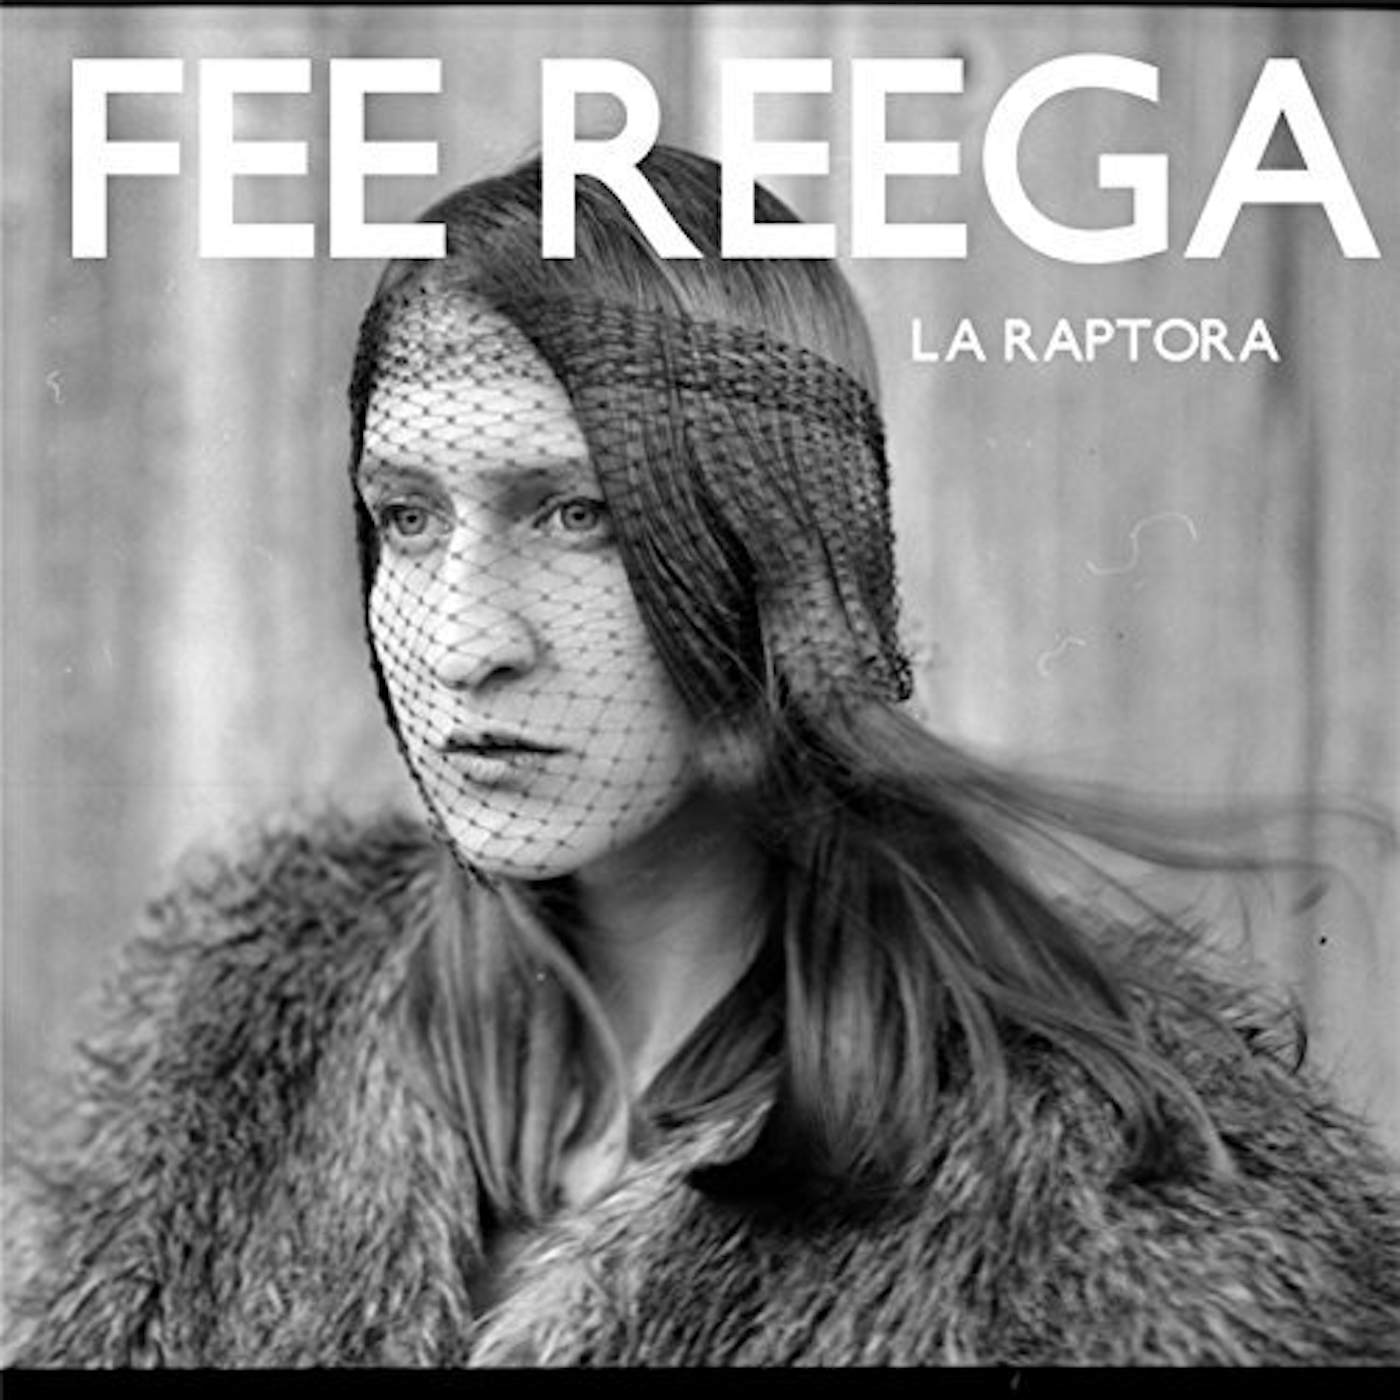 Fee Reega La Raptora Vinyl Record